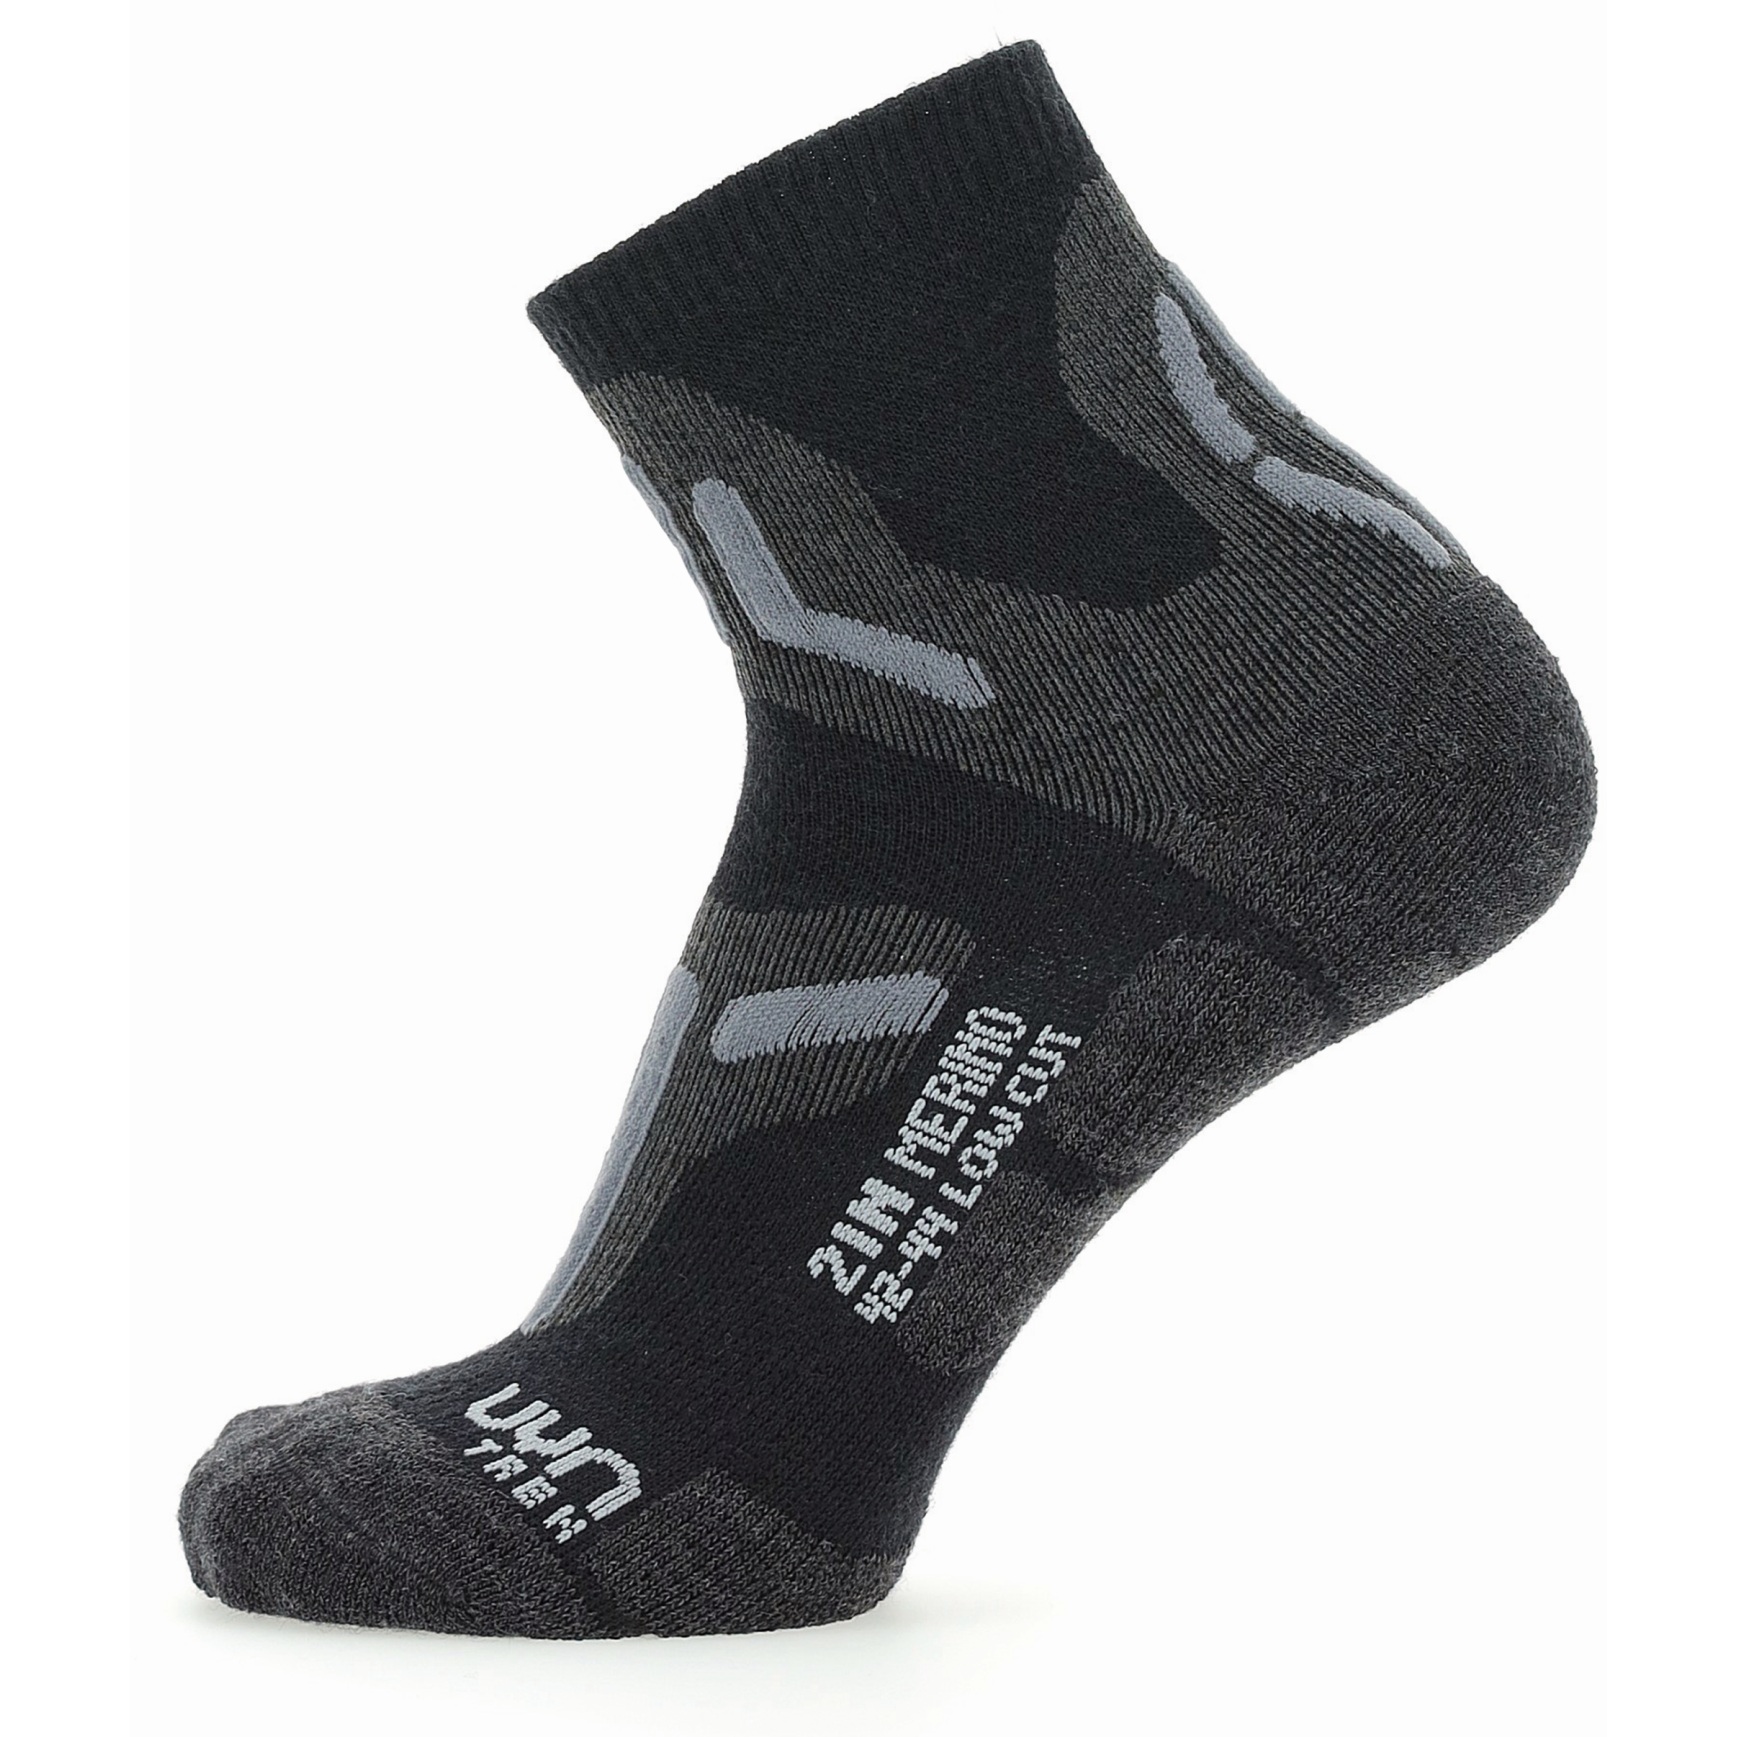 Produktbild von UYN Trekking 2In Merino Low Cut Socken - Schwarz/Grau